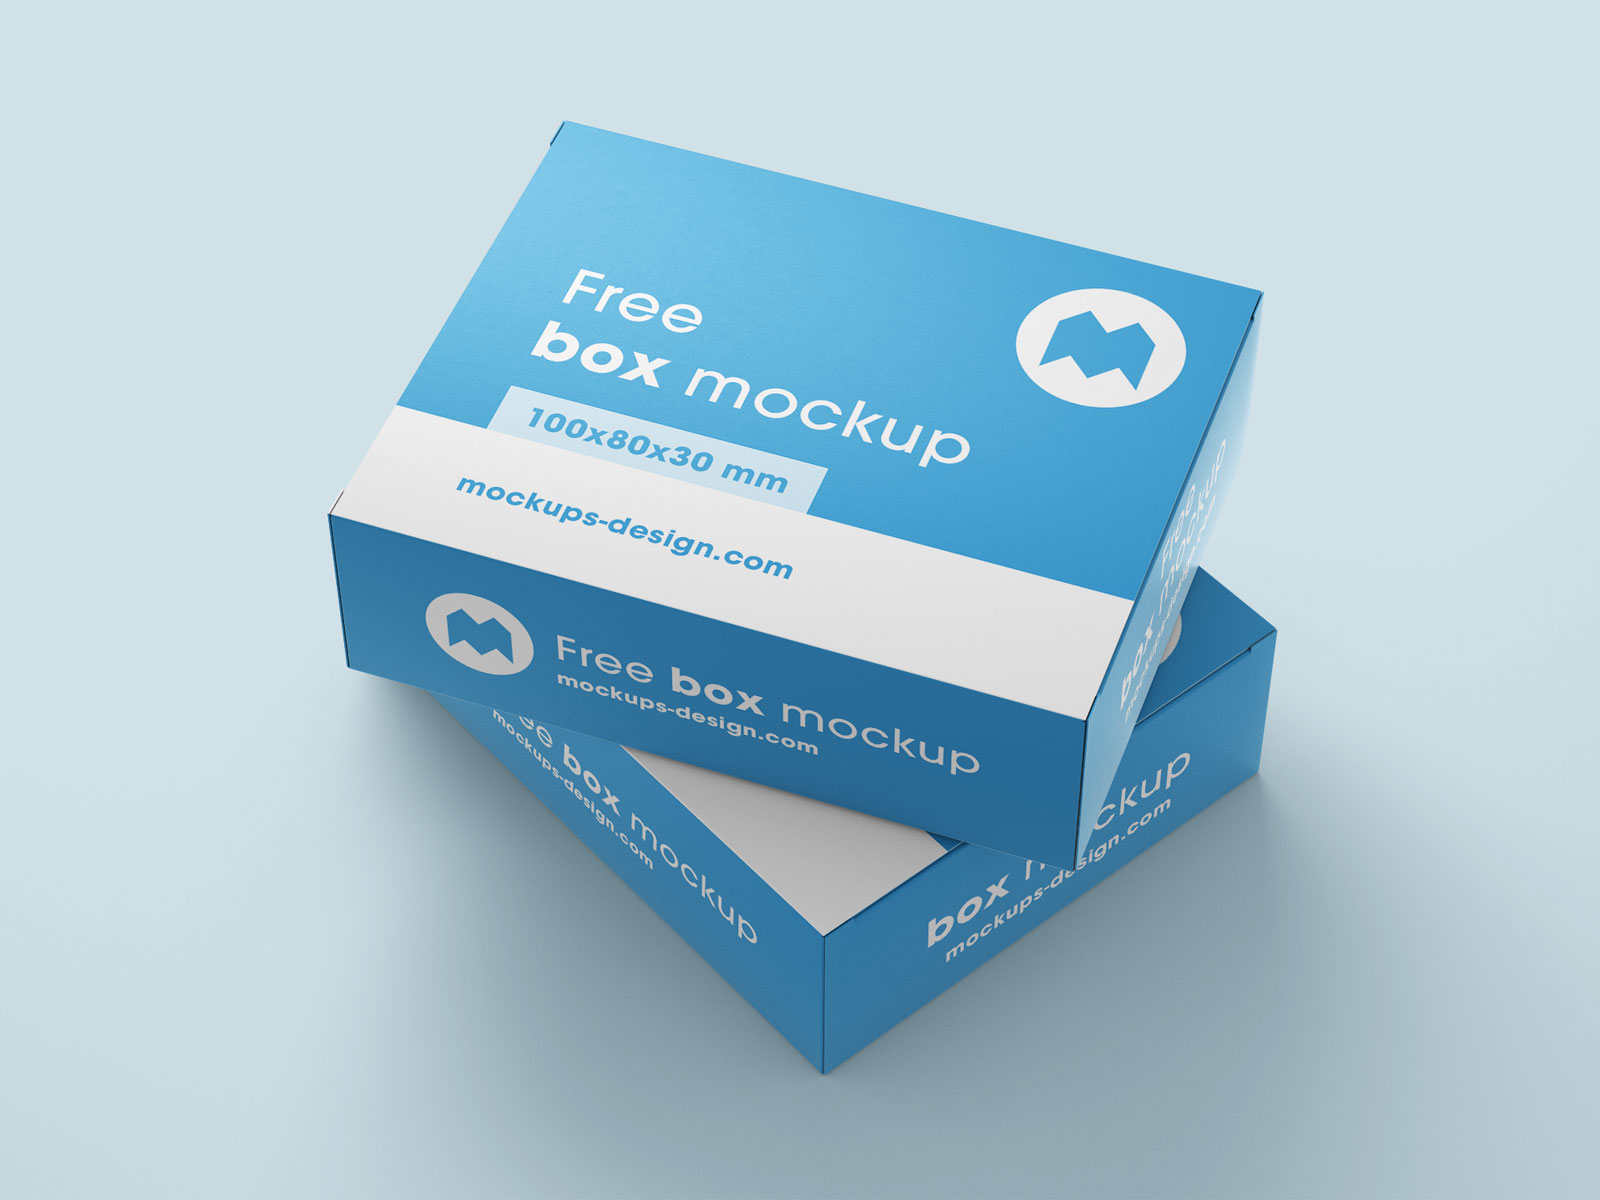 Download Free Box Packaging Mockup Psd Set Good Mockups PSD Mockup Templates